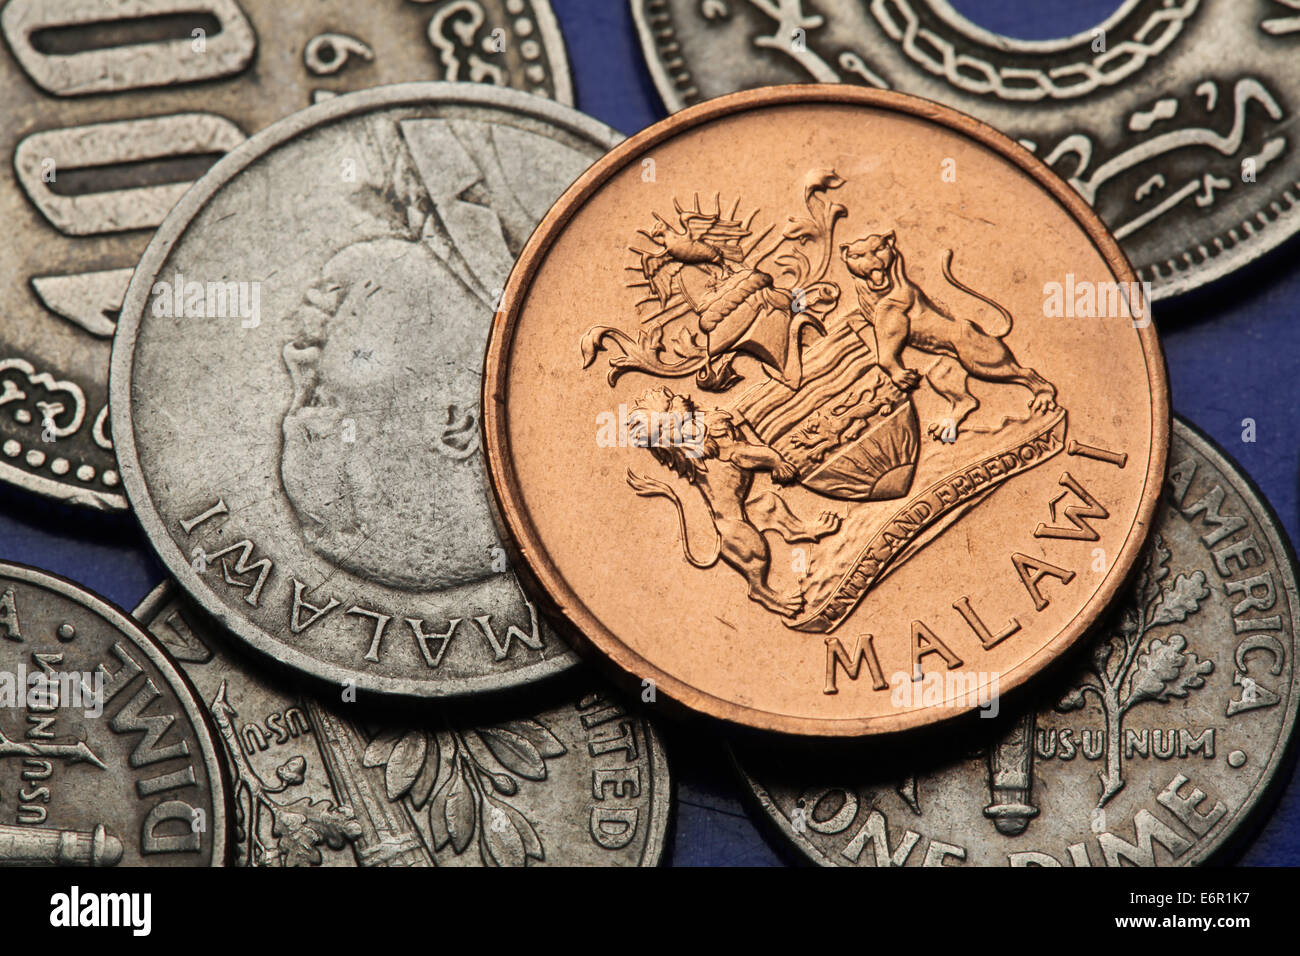 Münzen von Malawi. Malawische Wappen und malawischer Nationalheld John Chilembwes dargestellt in Malawi Tambala Münzen. Stockfoto